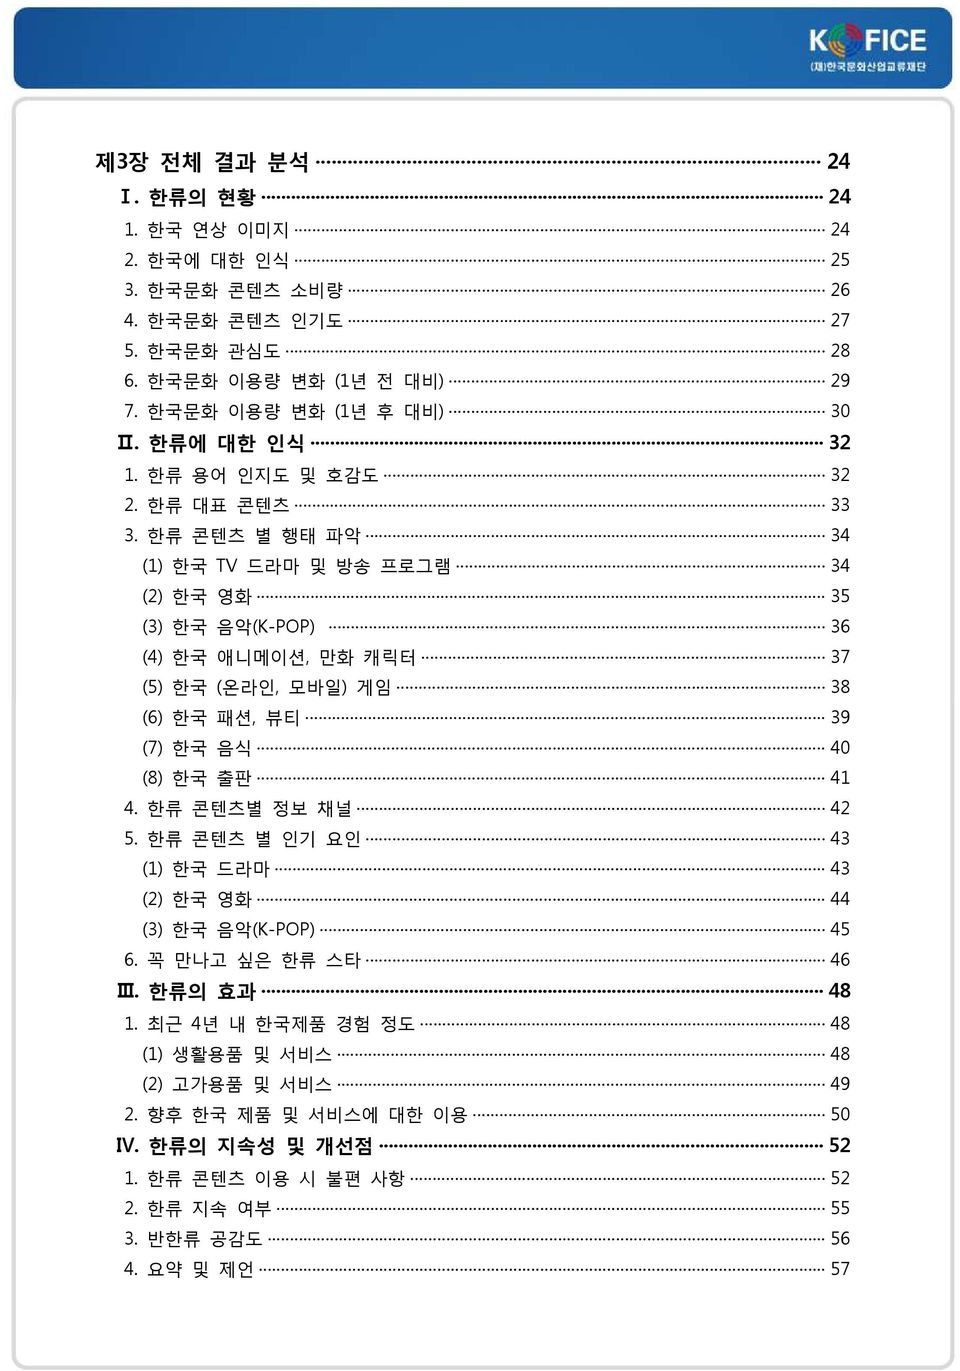 한류 콘텐츠 별 행태 파악 34 (1) 한국 TV 드라마 및 방송 프로그램 34 (2) 한국 영화 35 (3) 한국 음악(K-POP) 36 (4) 한국 애니메이션, 만화 캐릭터 37 (5) 한국 (온라인, 모바일) 게임 38 (6) 한국 패션, 뷰티 39 (7) 한국 음식 40 (8) 한국 출판 41 4.